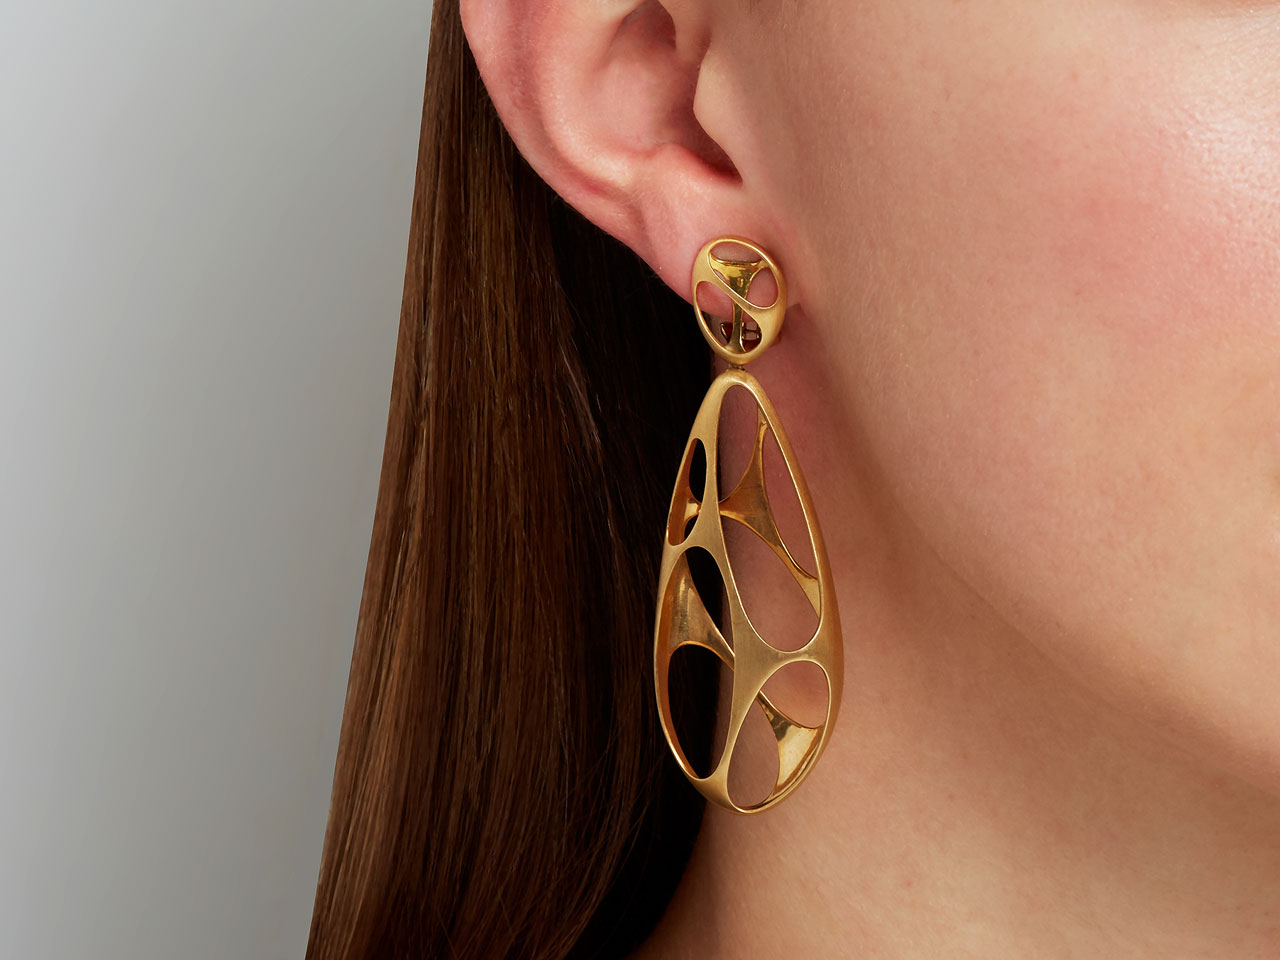 Modernist Drop Earrings in 18K Gold